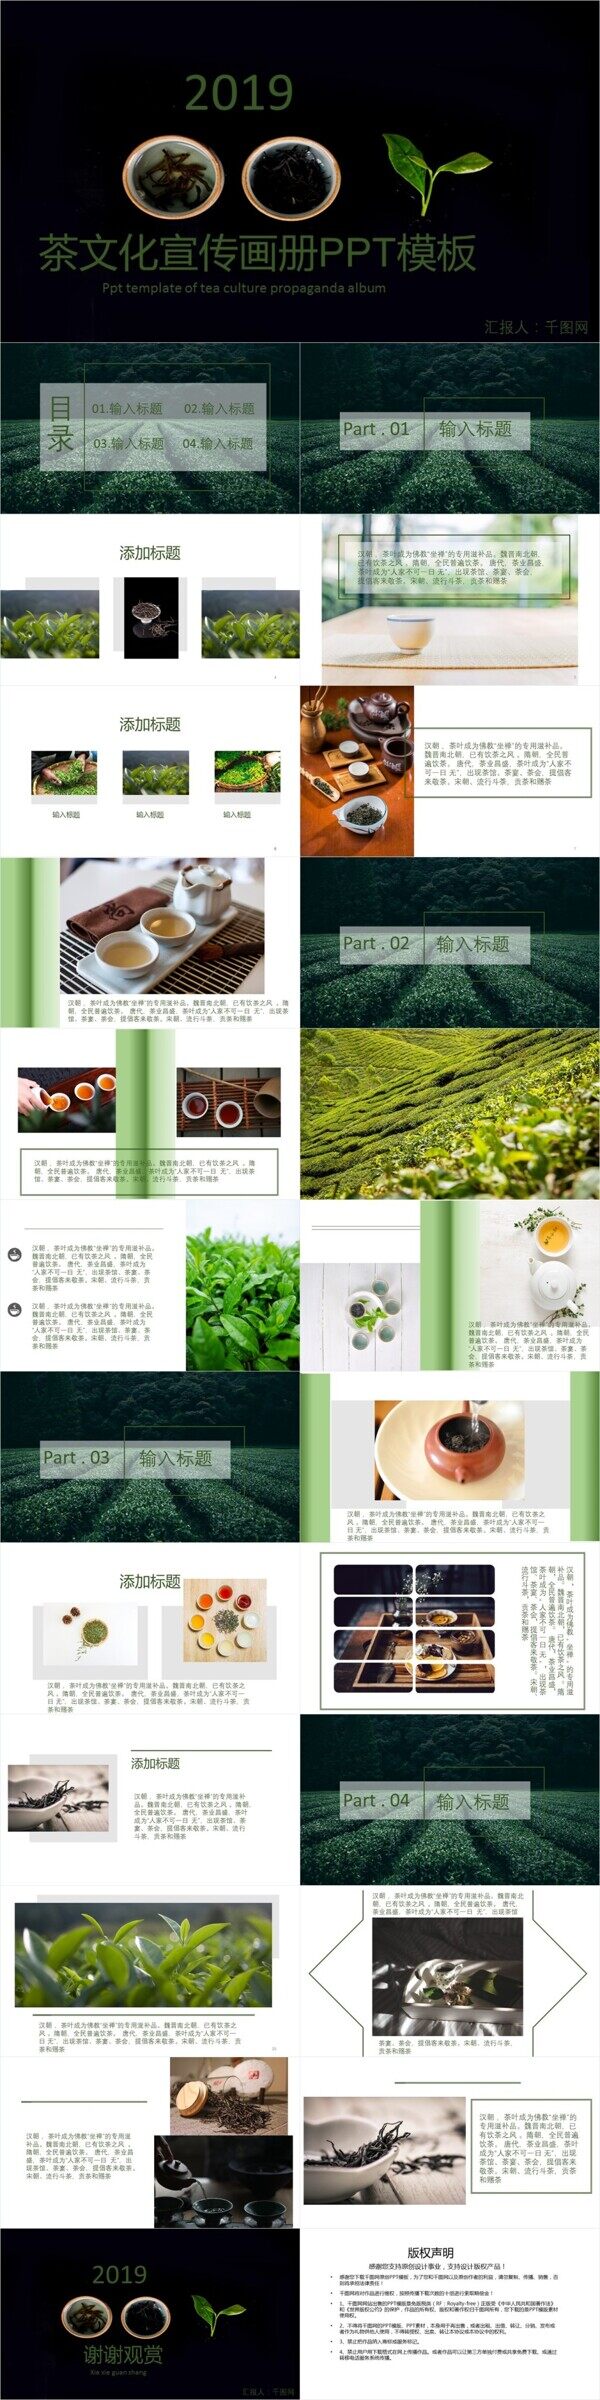 绿色茶文化宣传画册PPT